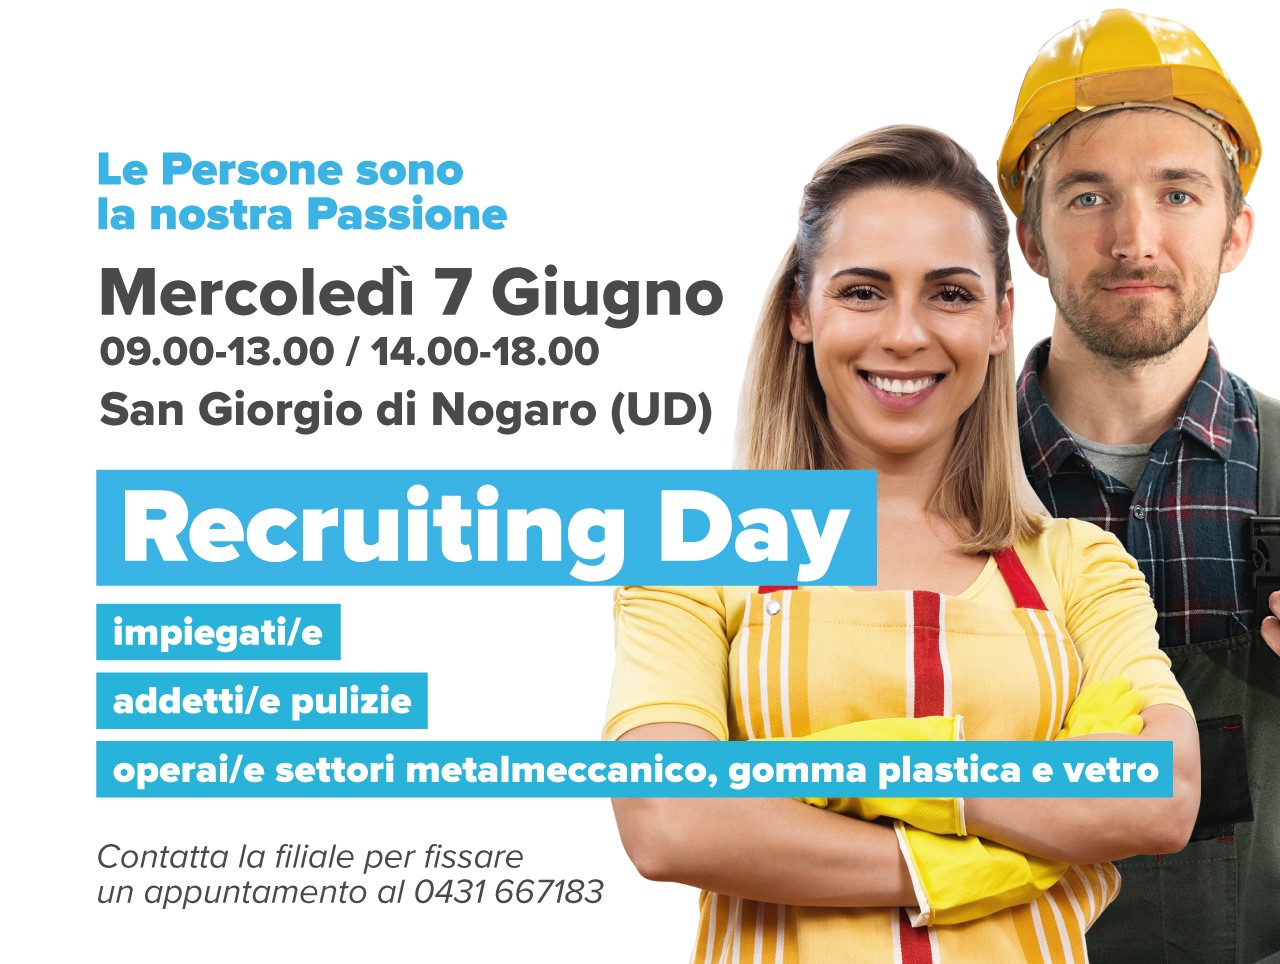 Recruiting Day - San Giorgio di Nogaro (UD)